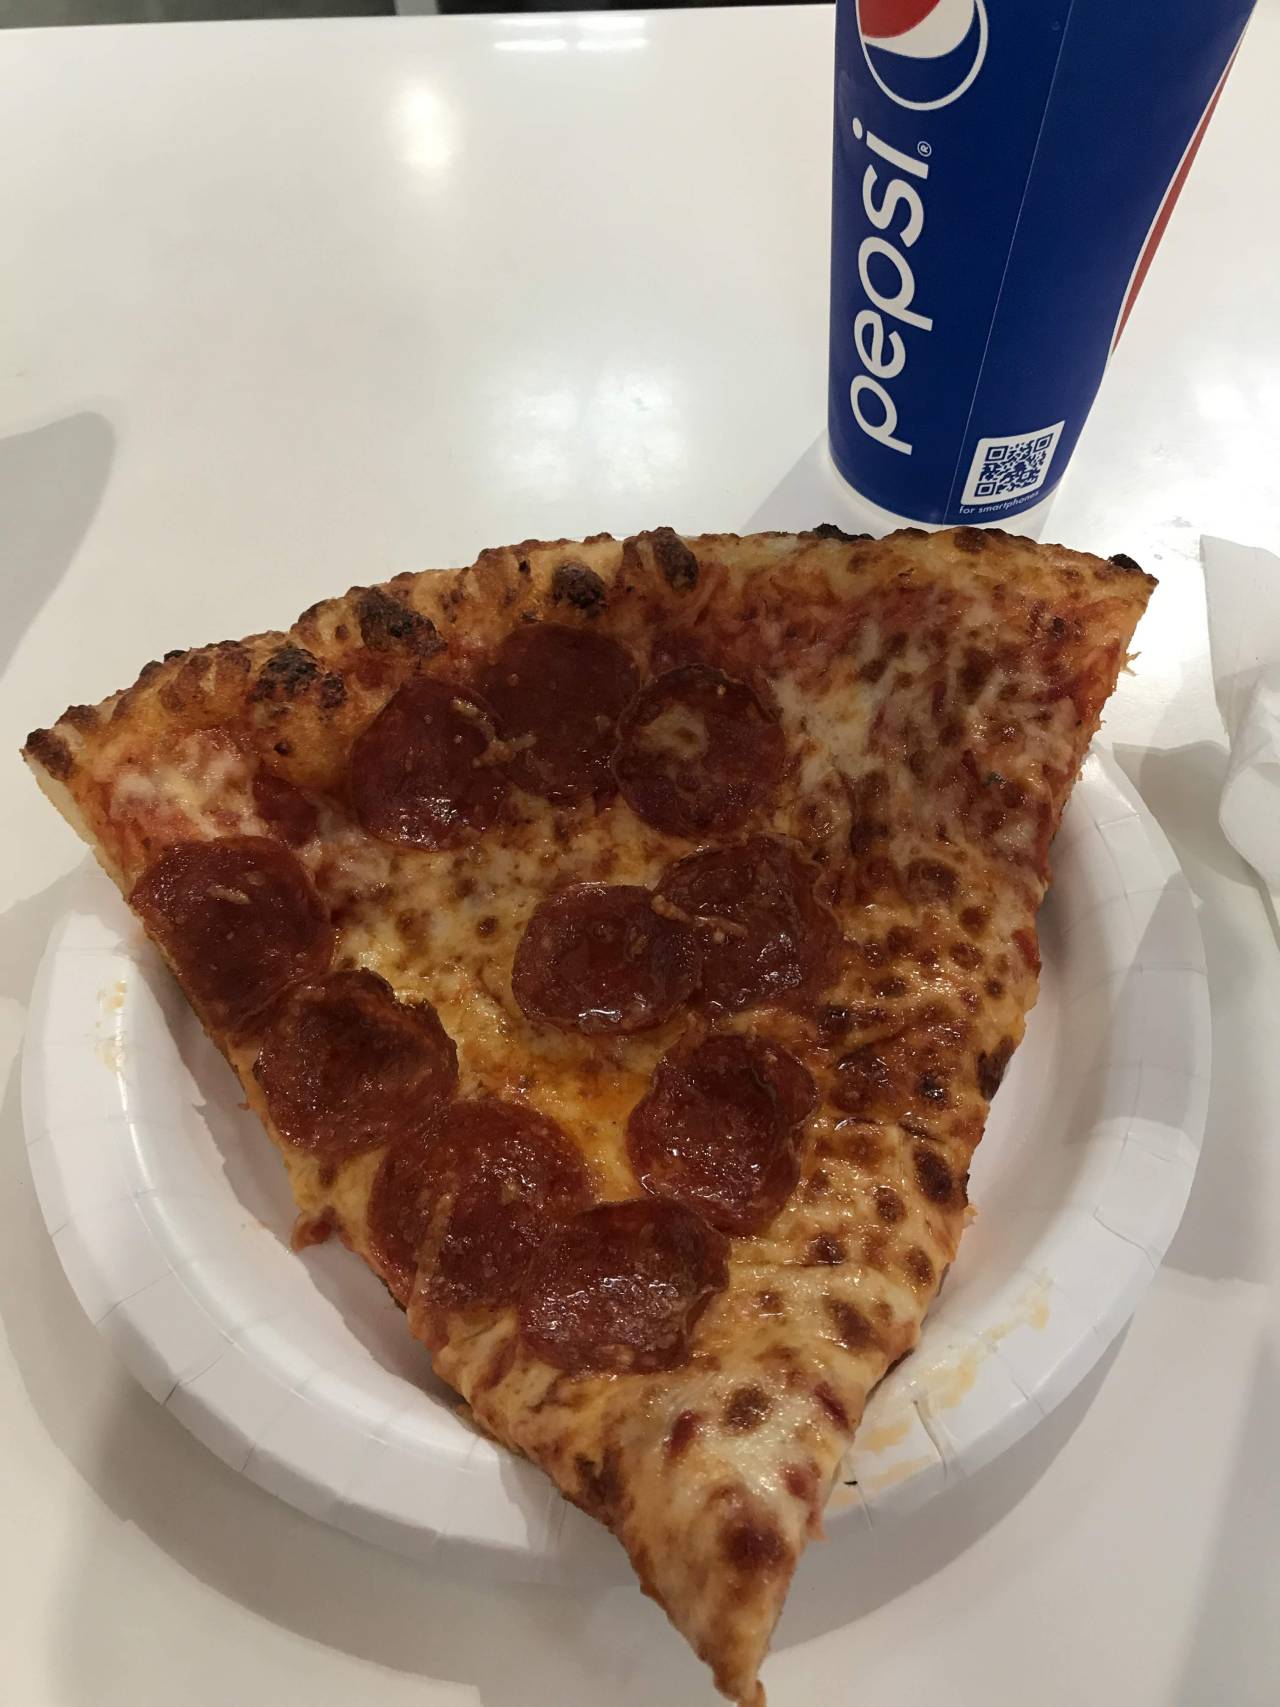 Tight Pizza Costco Food Court Ann Arbor Mi